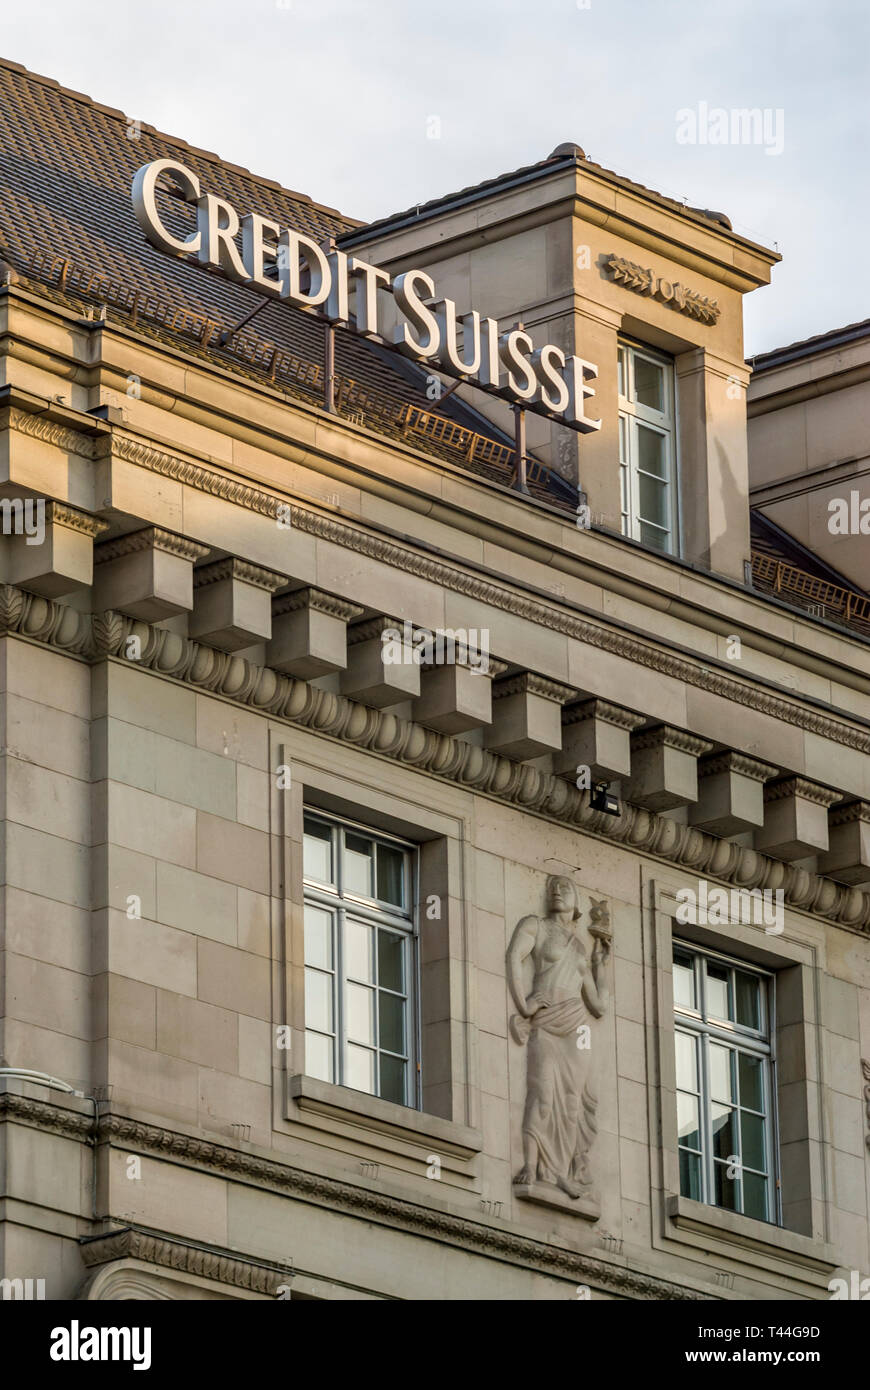 Fassade und Logo eines Gebäudes der Credit Suisse Bank in Luzern, Schweiz Stockfoto